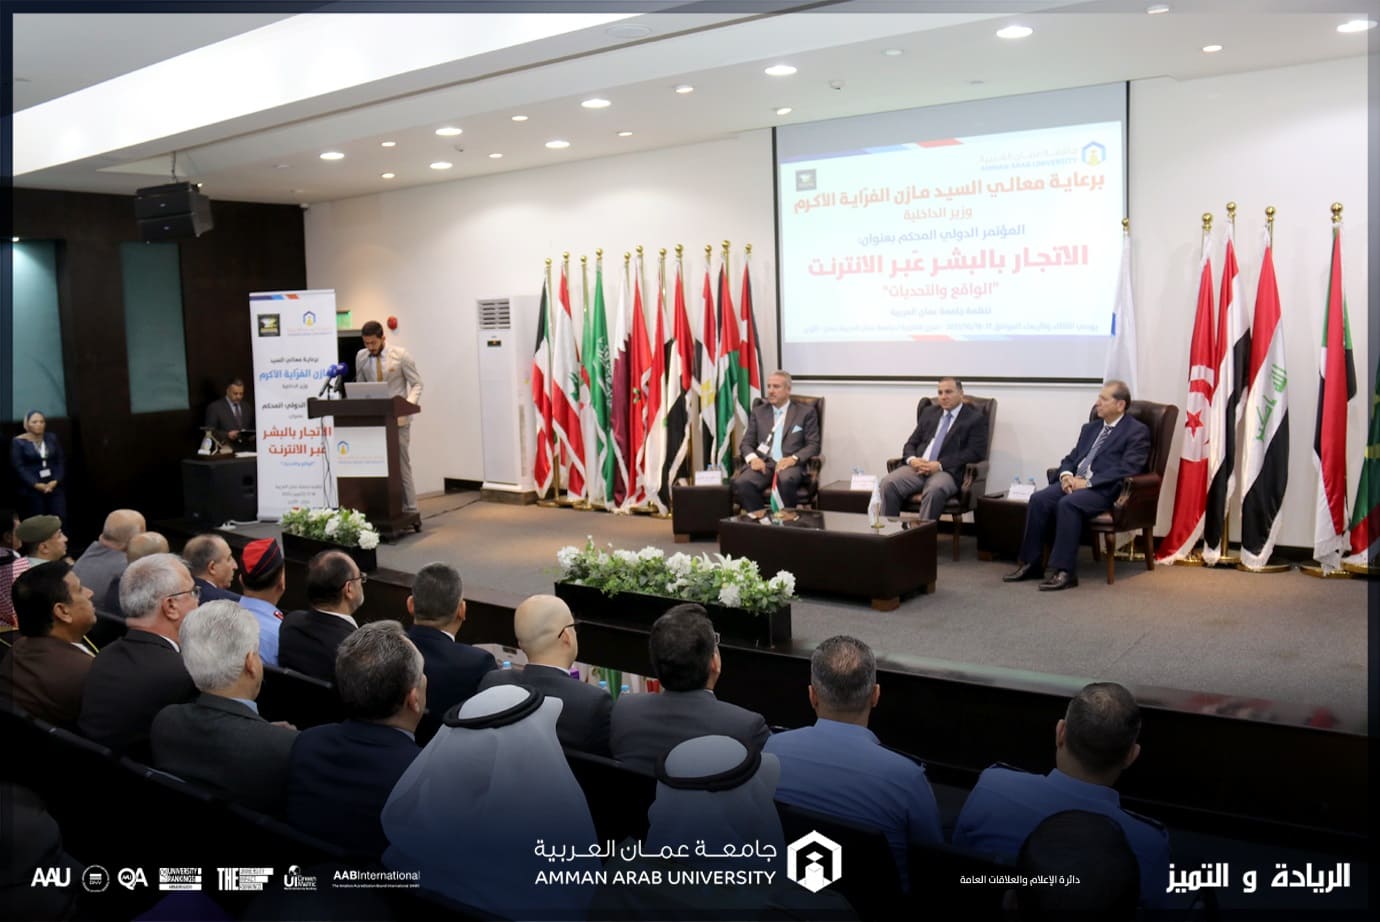 مؤتمر في "عمان العربية" يدعو إلى تغليظ العقوبات لأشكال الجرائم بالبشر عبر الانترنت